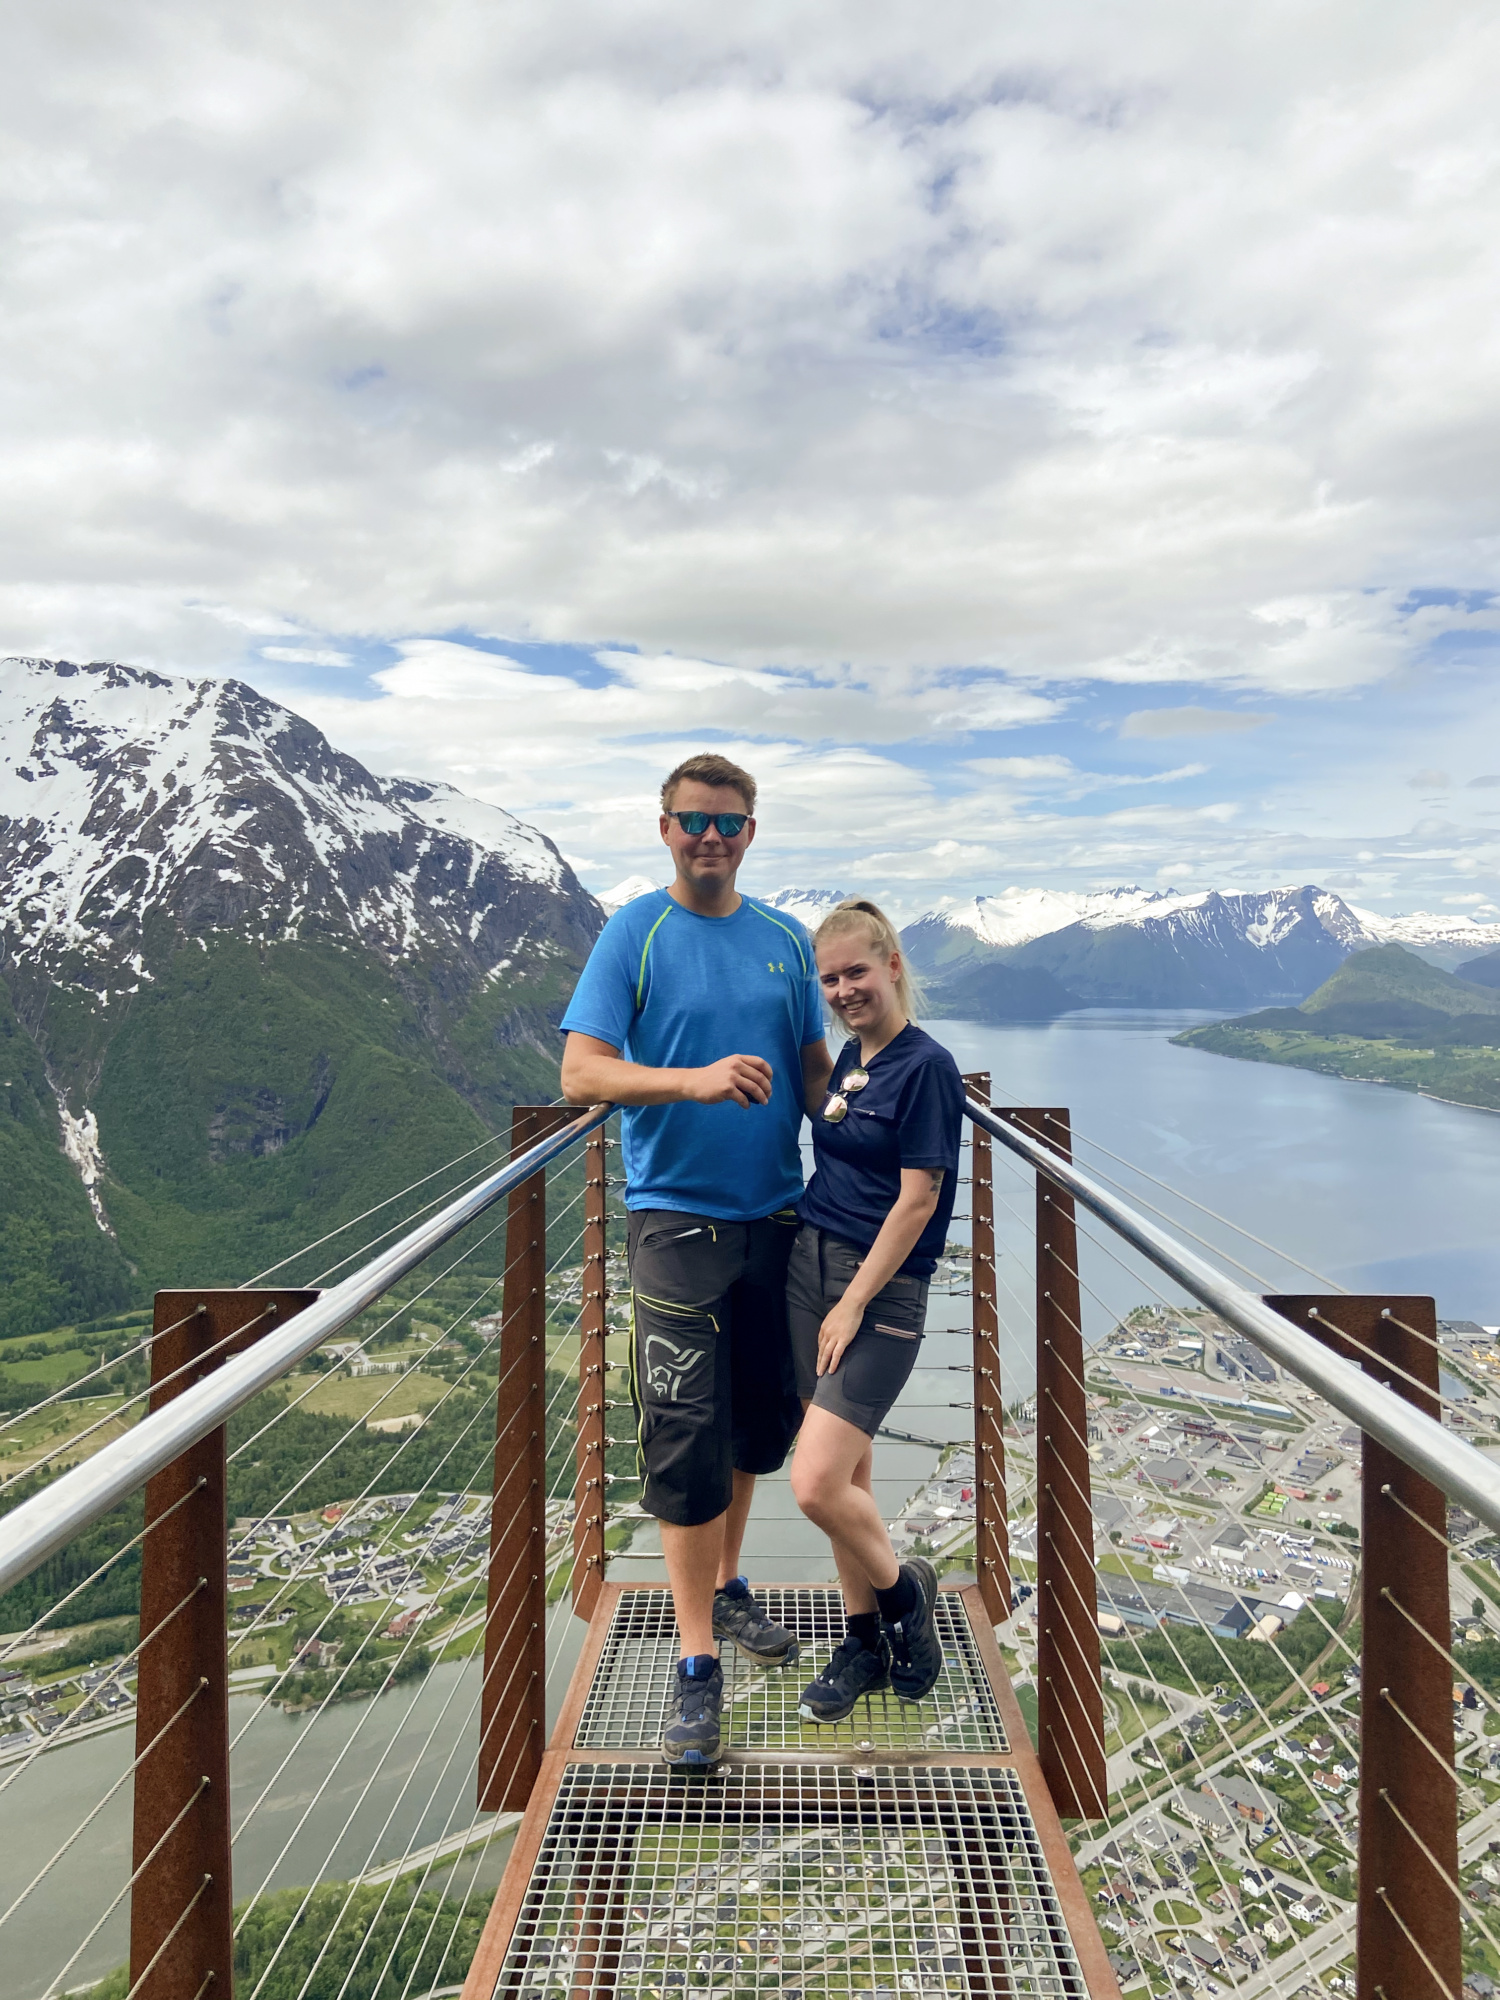 Veronica og Jørn er aktive, både i fjellet og ved sjøen. Her ved Rampestreken. Foto: Privat